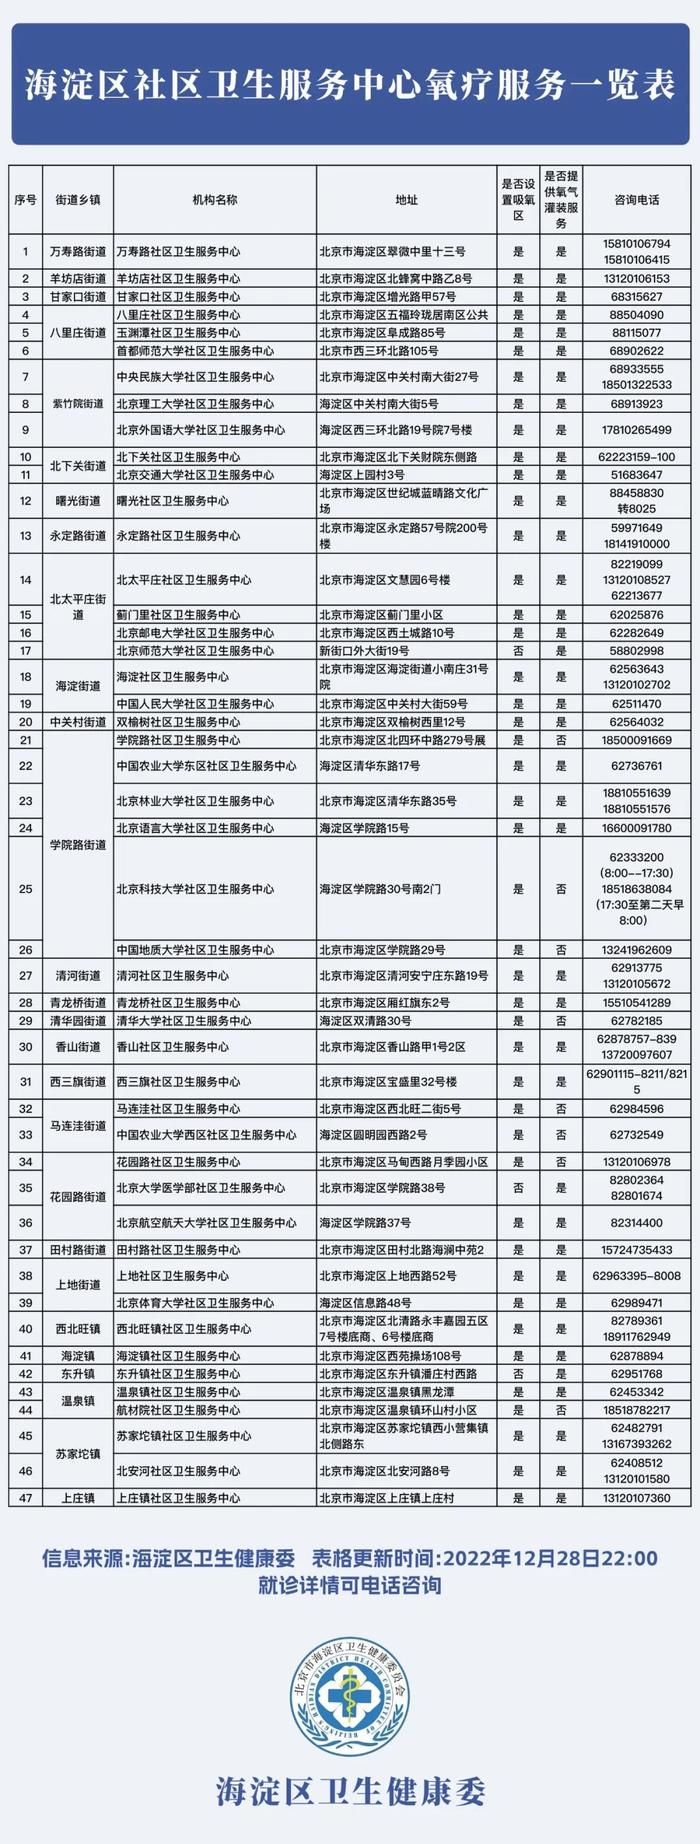 北京海淀区47家社区卫生服务中心提供氧疗服务，一览表请查收